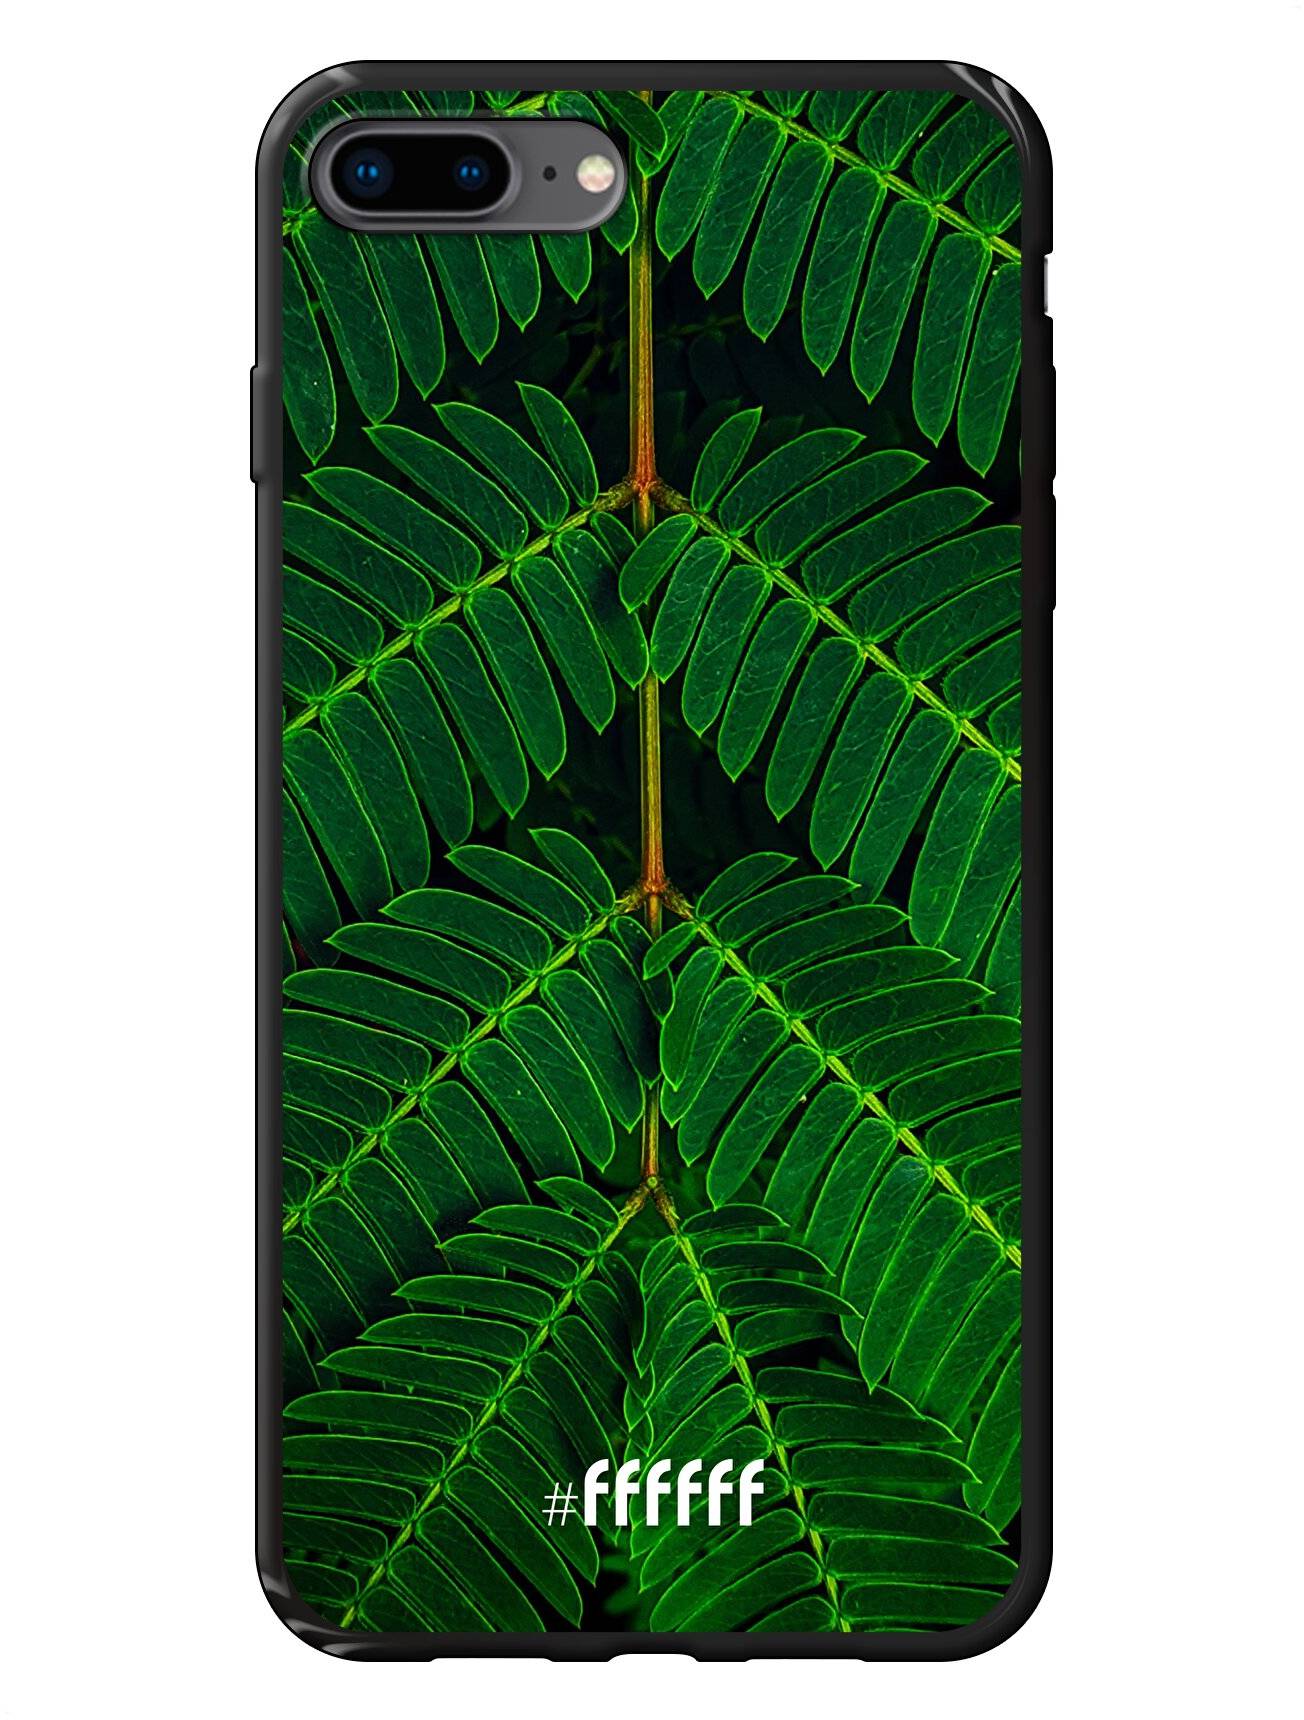 Symmetric Plants iPhone 7 Plus